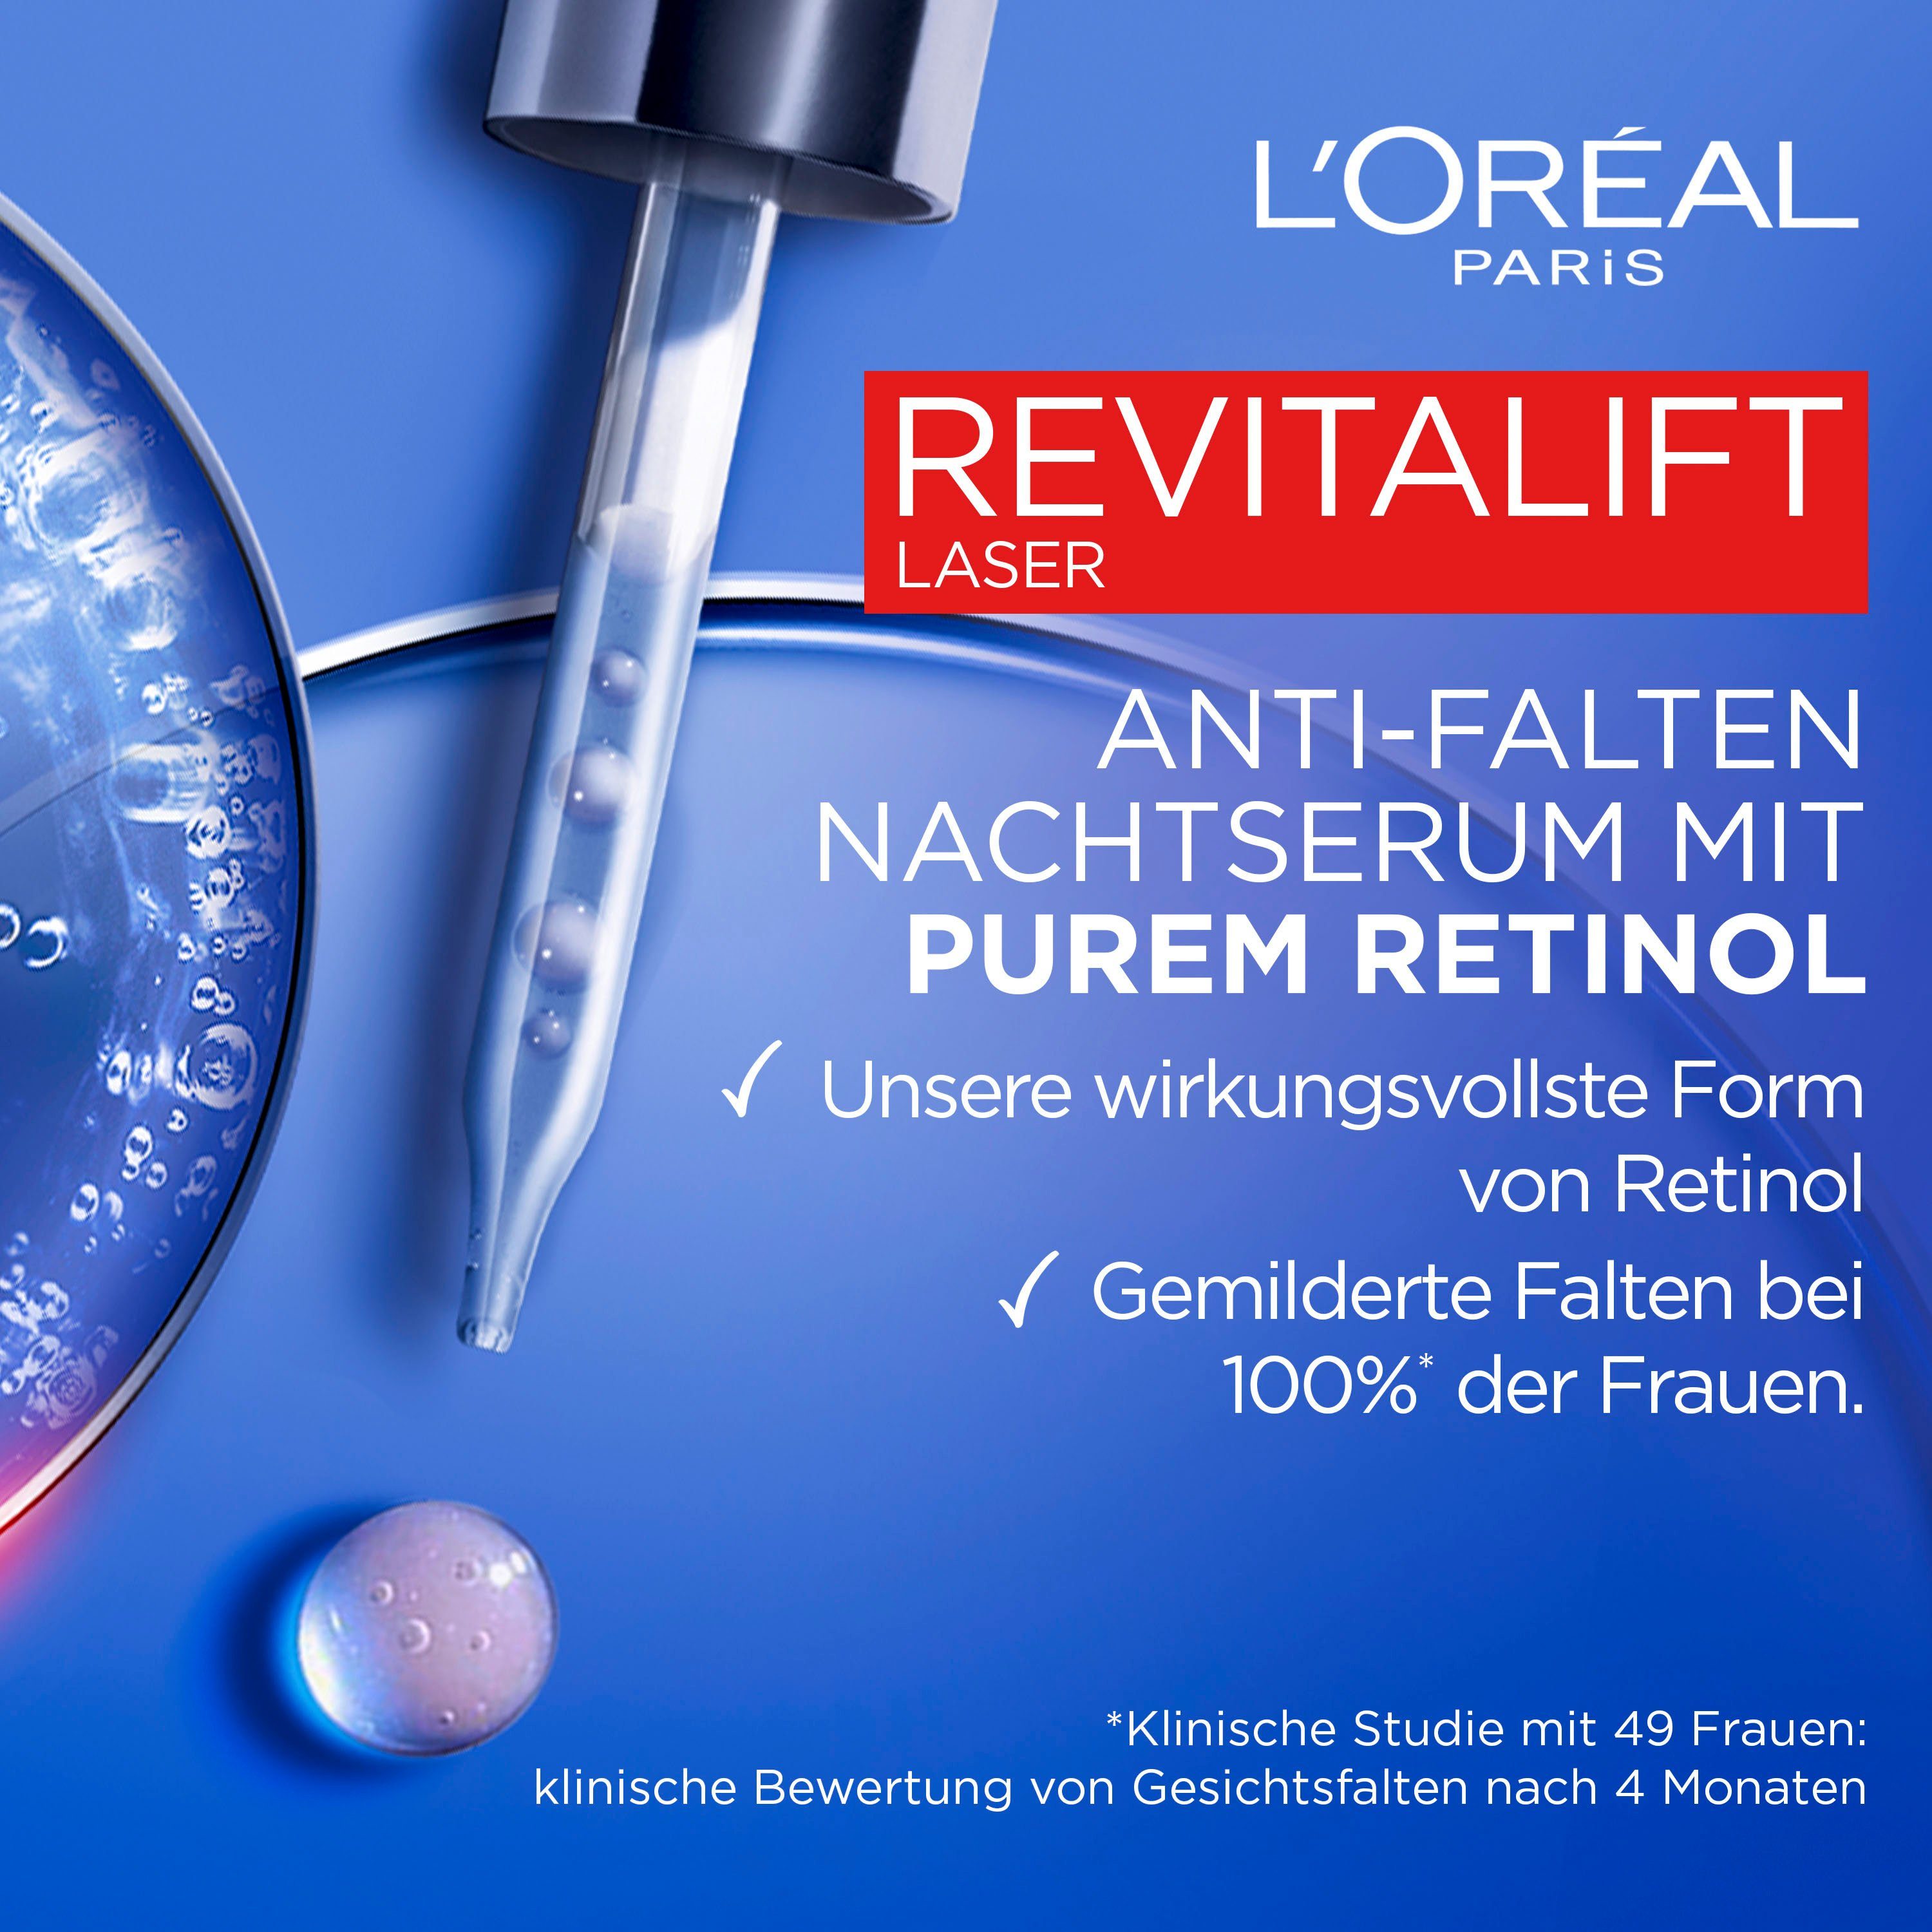 L'ORÉAL Gesichtsserum Serum Retinol Revitalift Laser PARIS